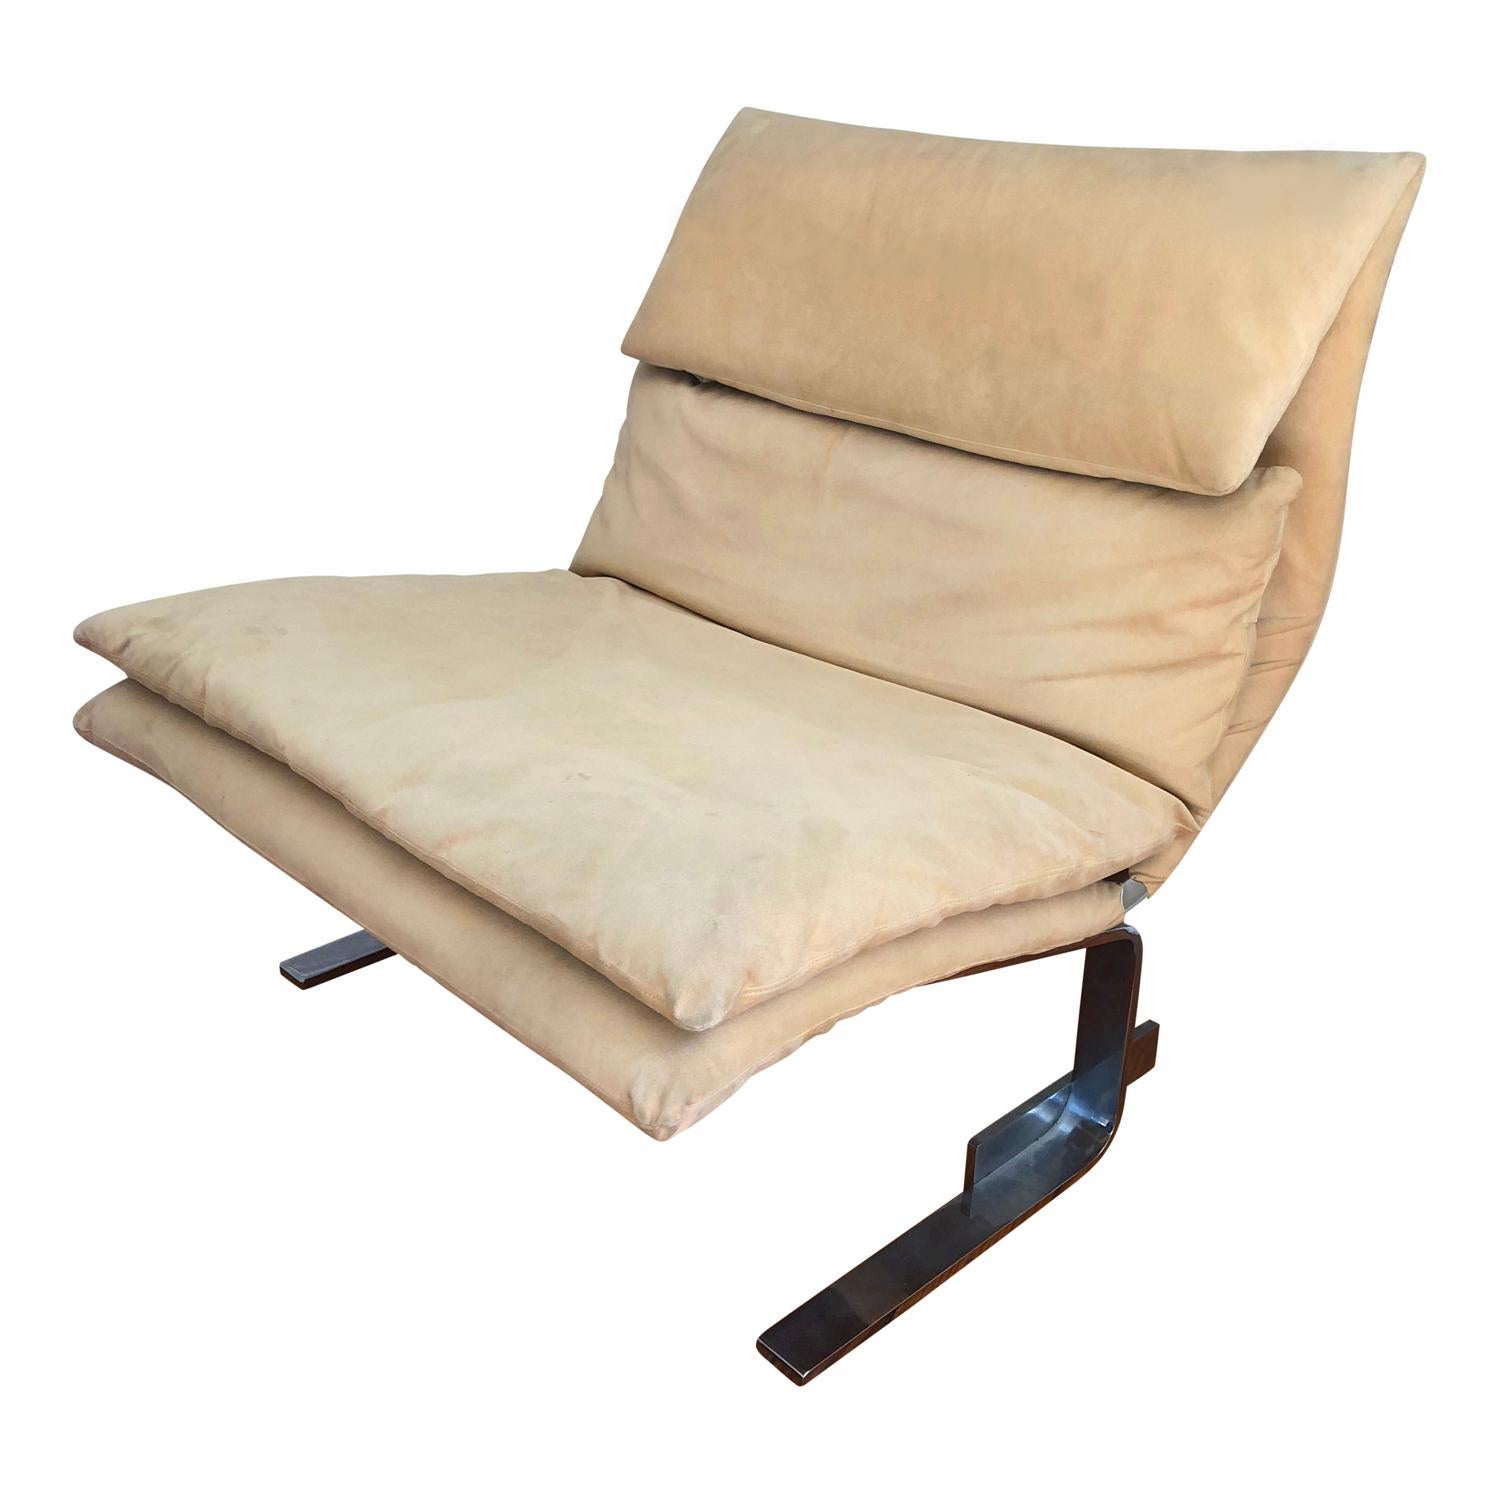 Pair of Midcentury Italian Modern Onda Slipper Lounge Chairs by Saporiti 2